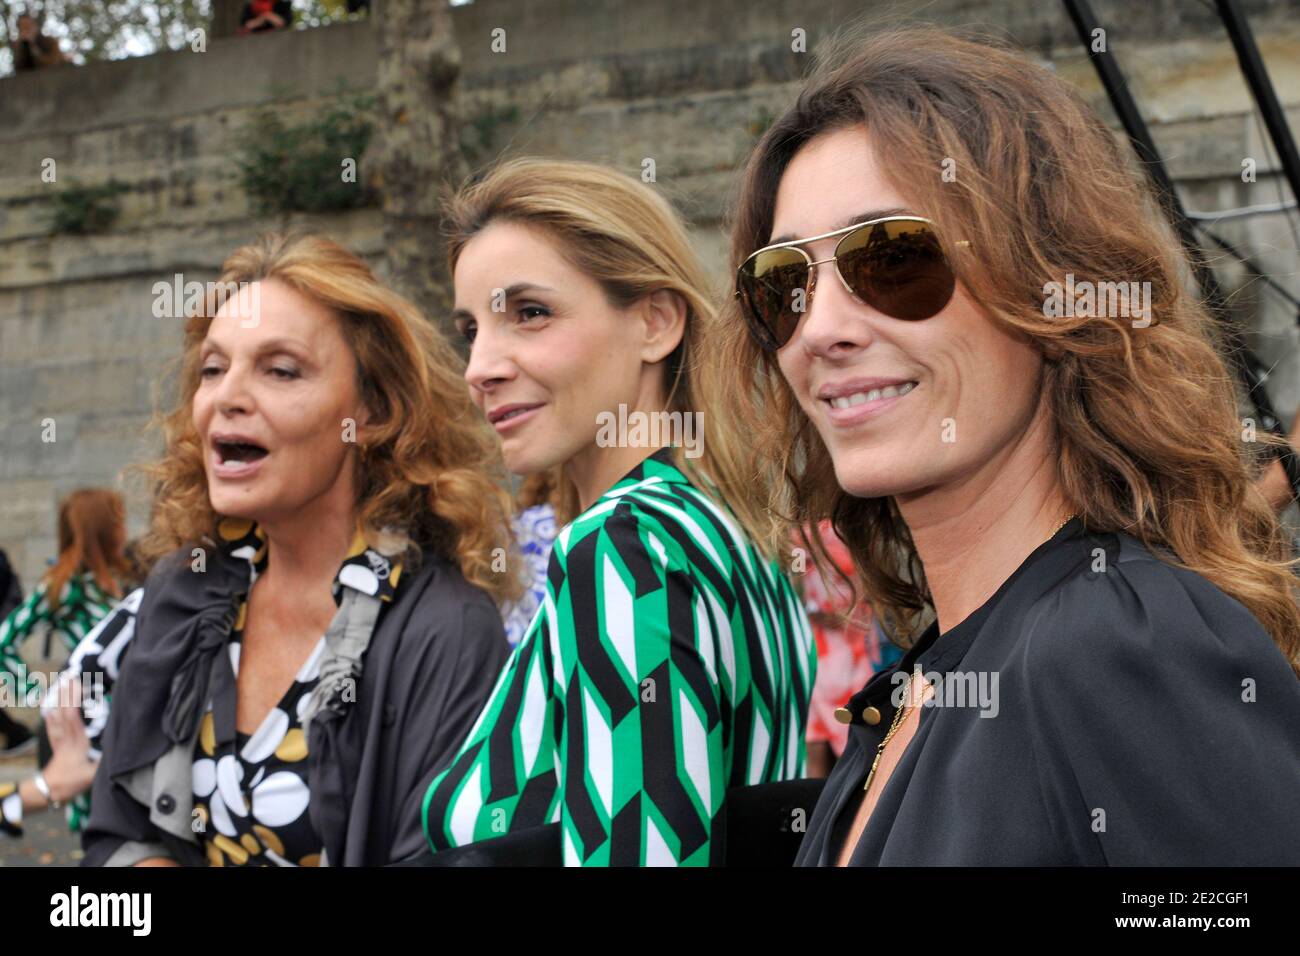 Diane von Furstenberg, Clotilde Courau and Mademoiselle Agnès attend the  designer Diane von Furstenberg's FlashMob to promote her new parfum called  "Diane". Diane Von Furstenberg was there today at 12:00 for a